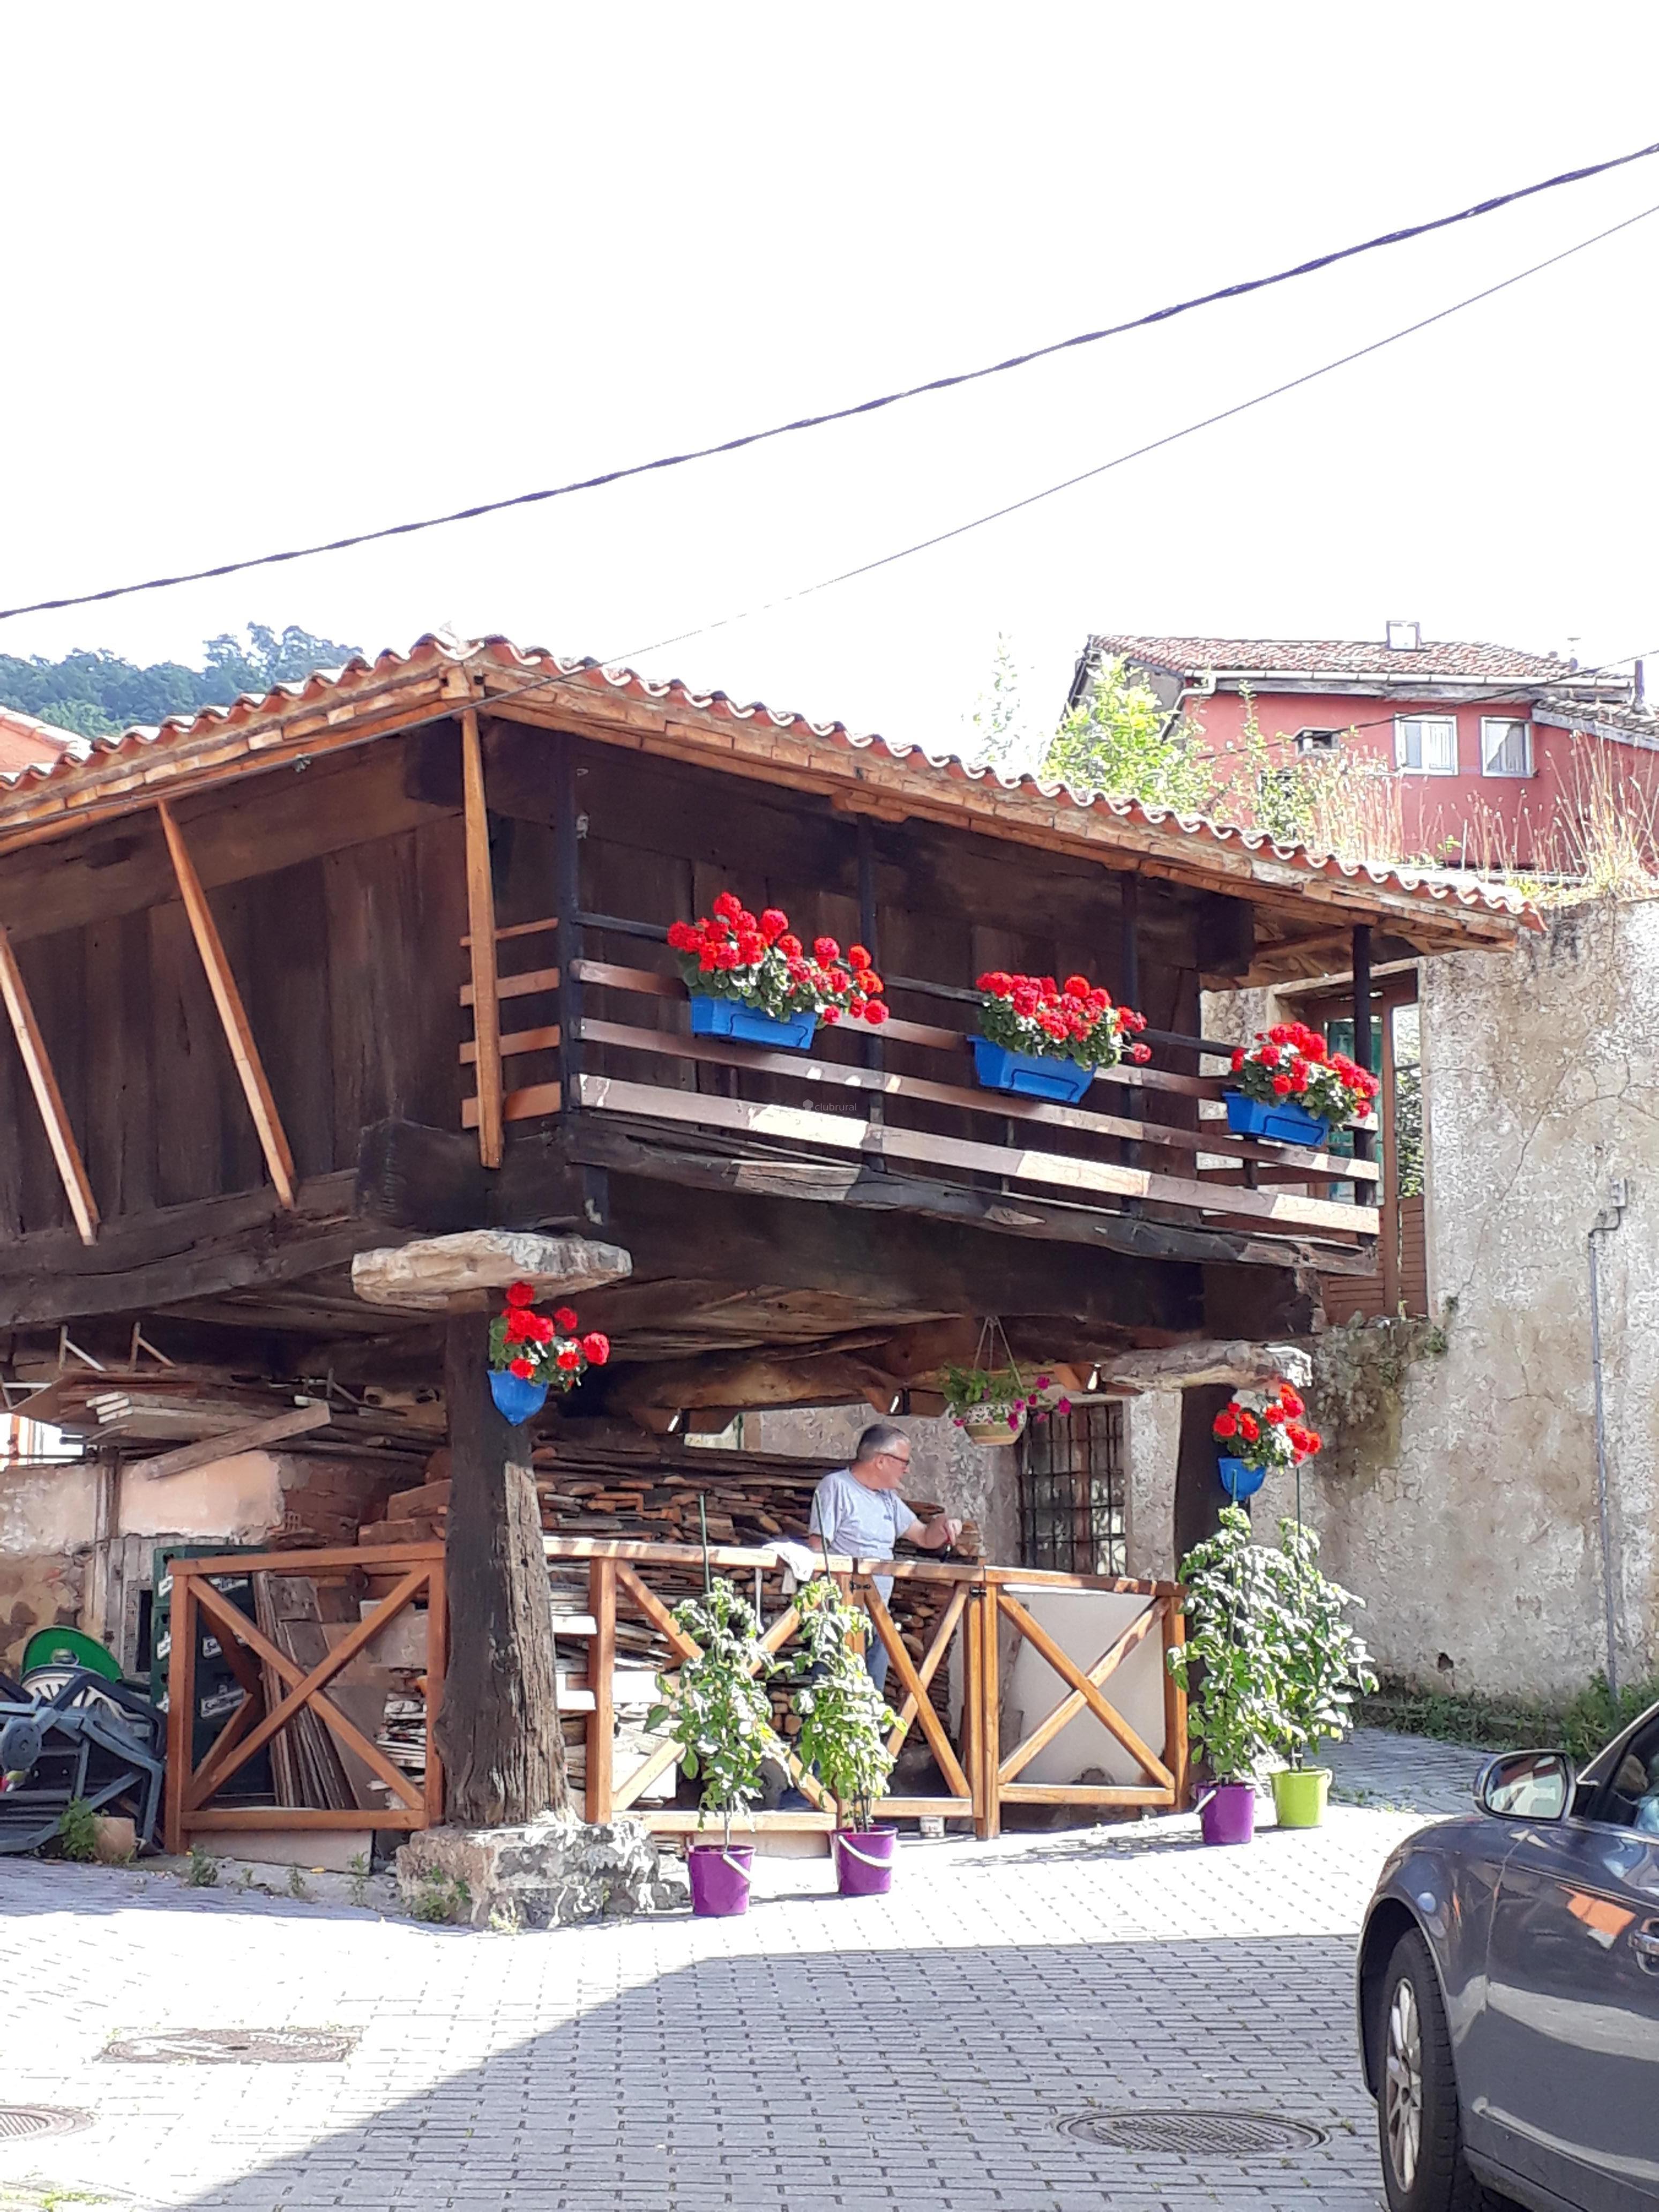 Fotos de El Polleru | Asturias - Cabranes (santa Eulalia) - Clubrural